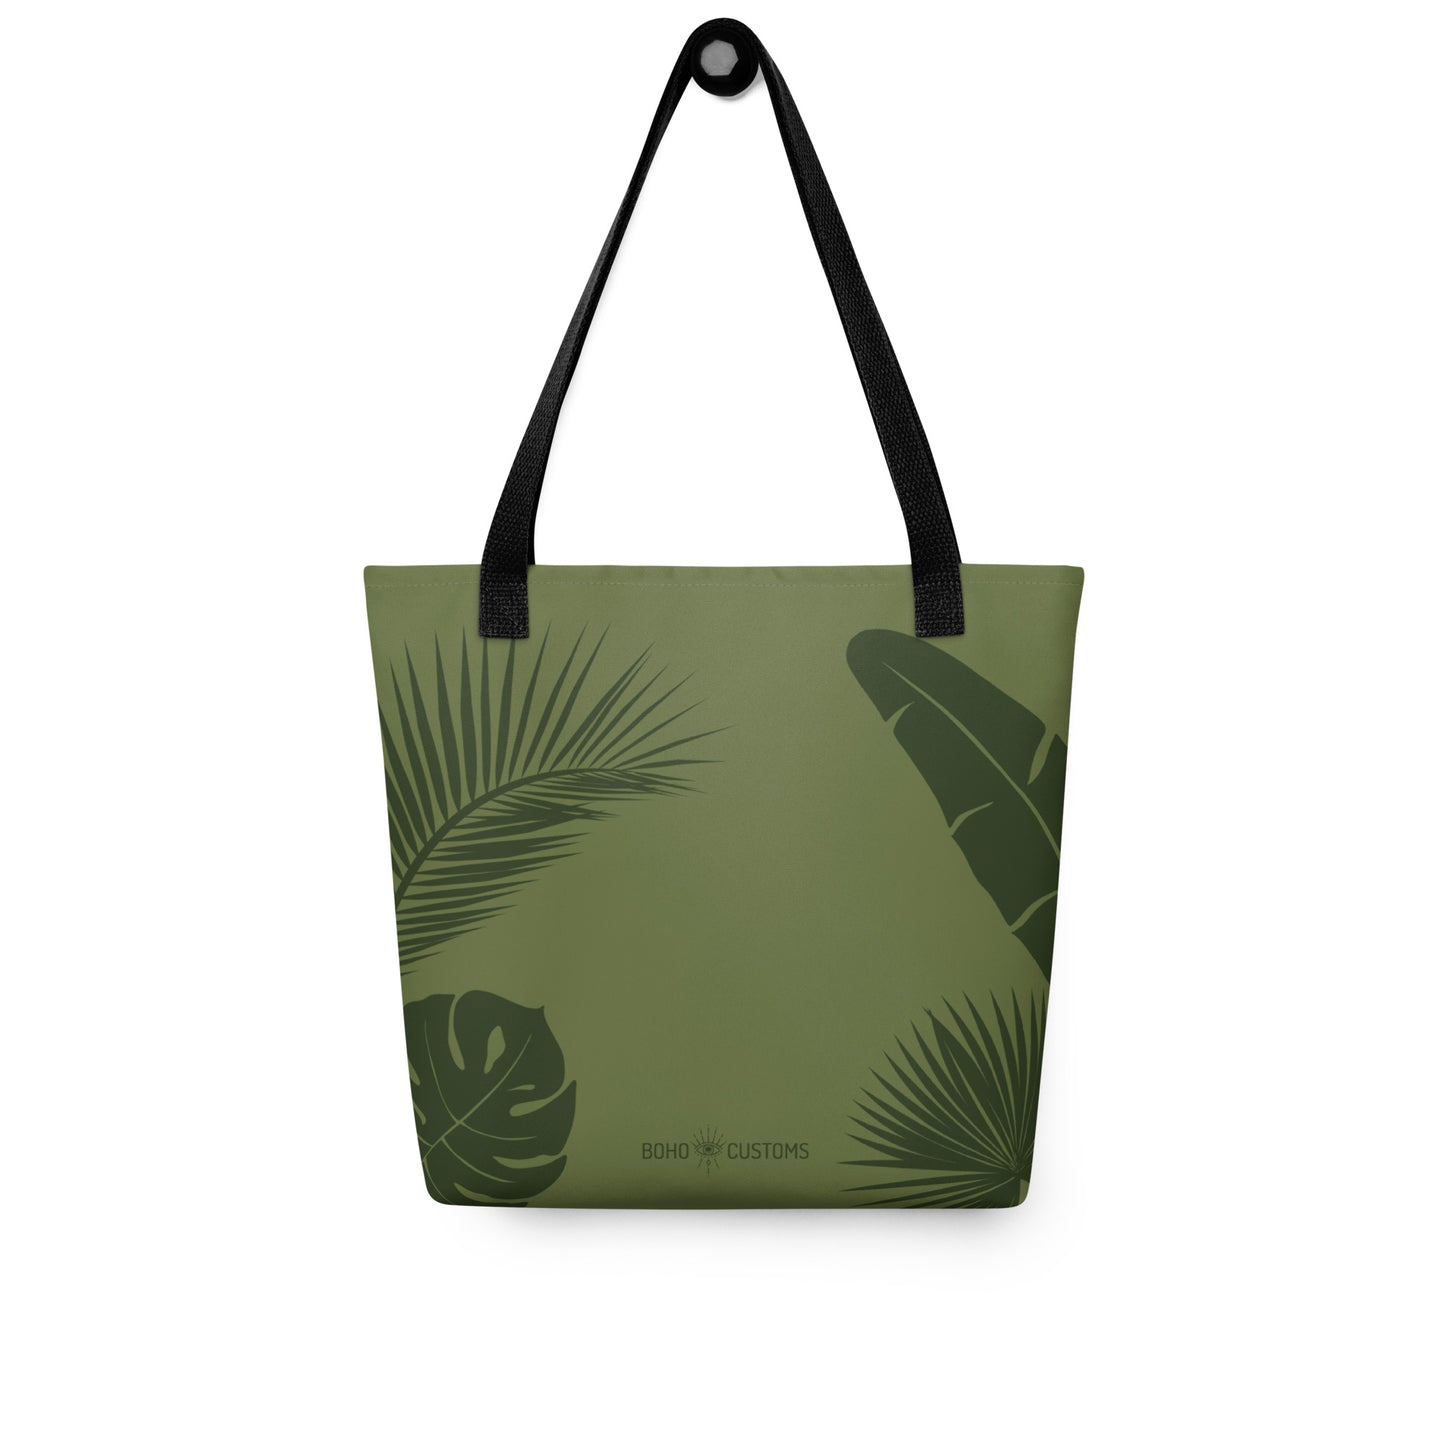 Tropical Tote Bag